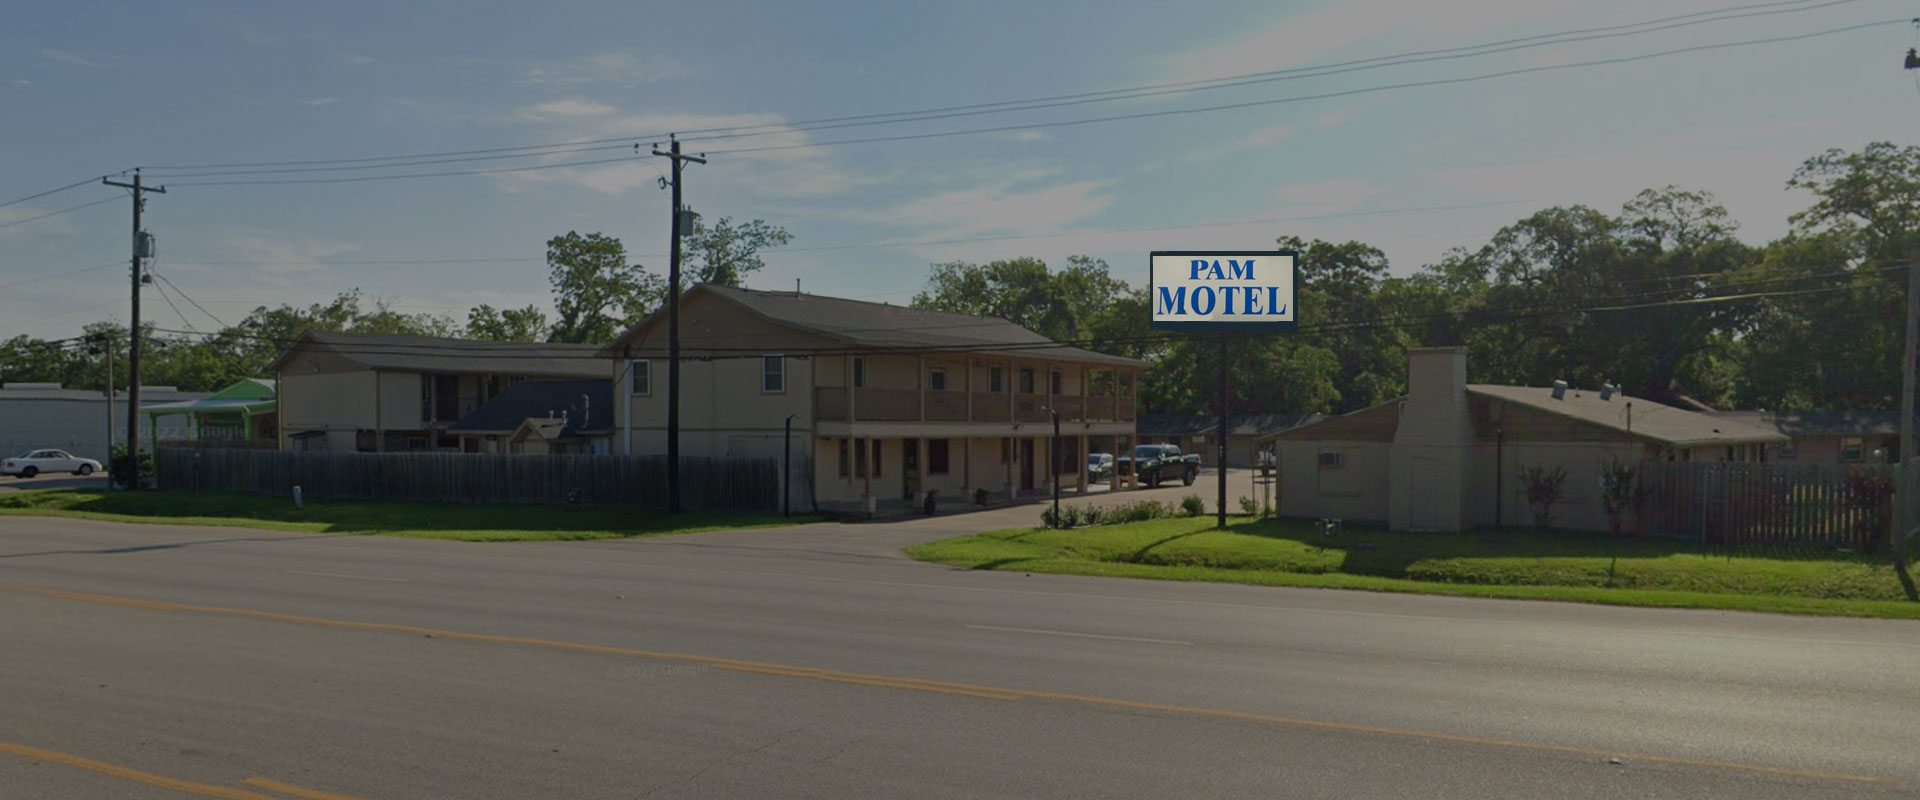 Best Motel in Clute, TX